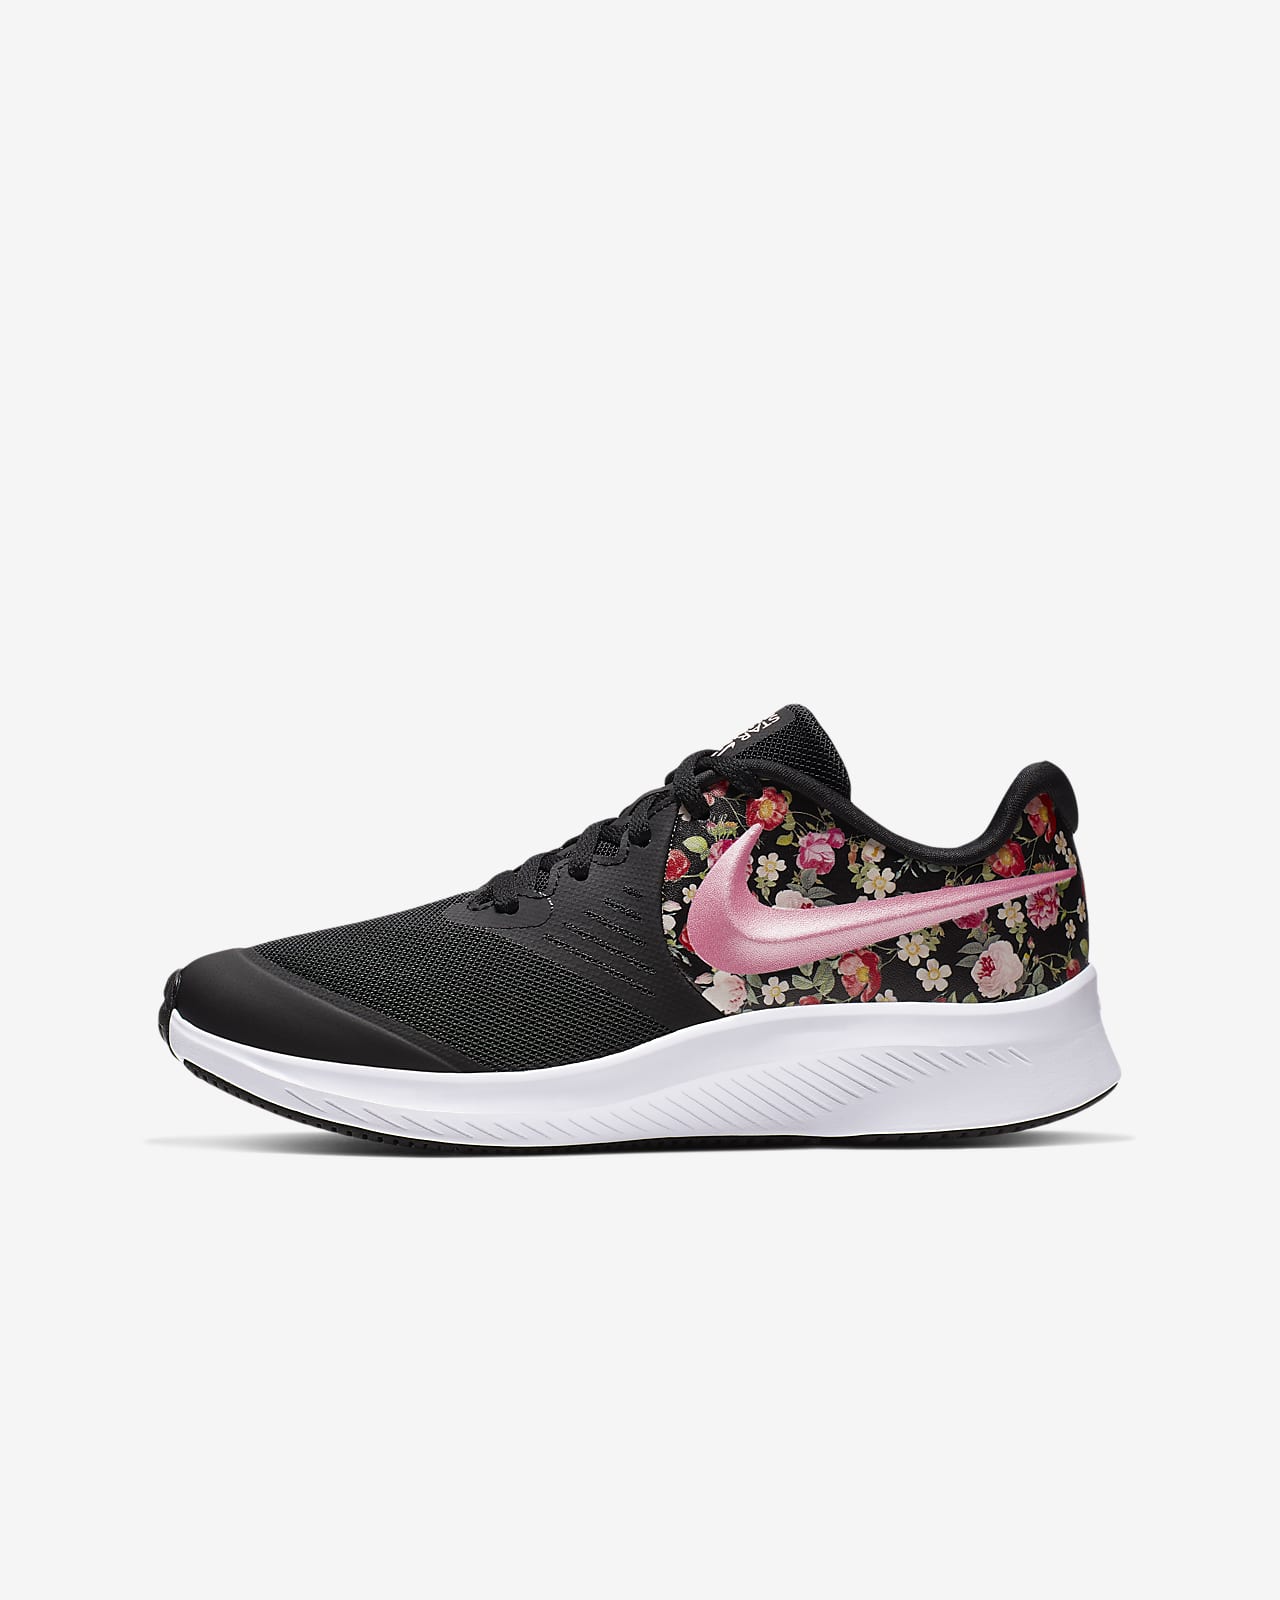 floral sneakers nike